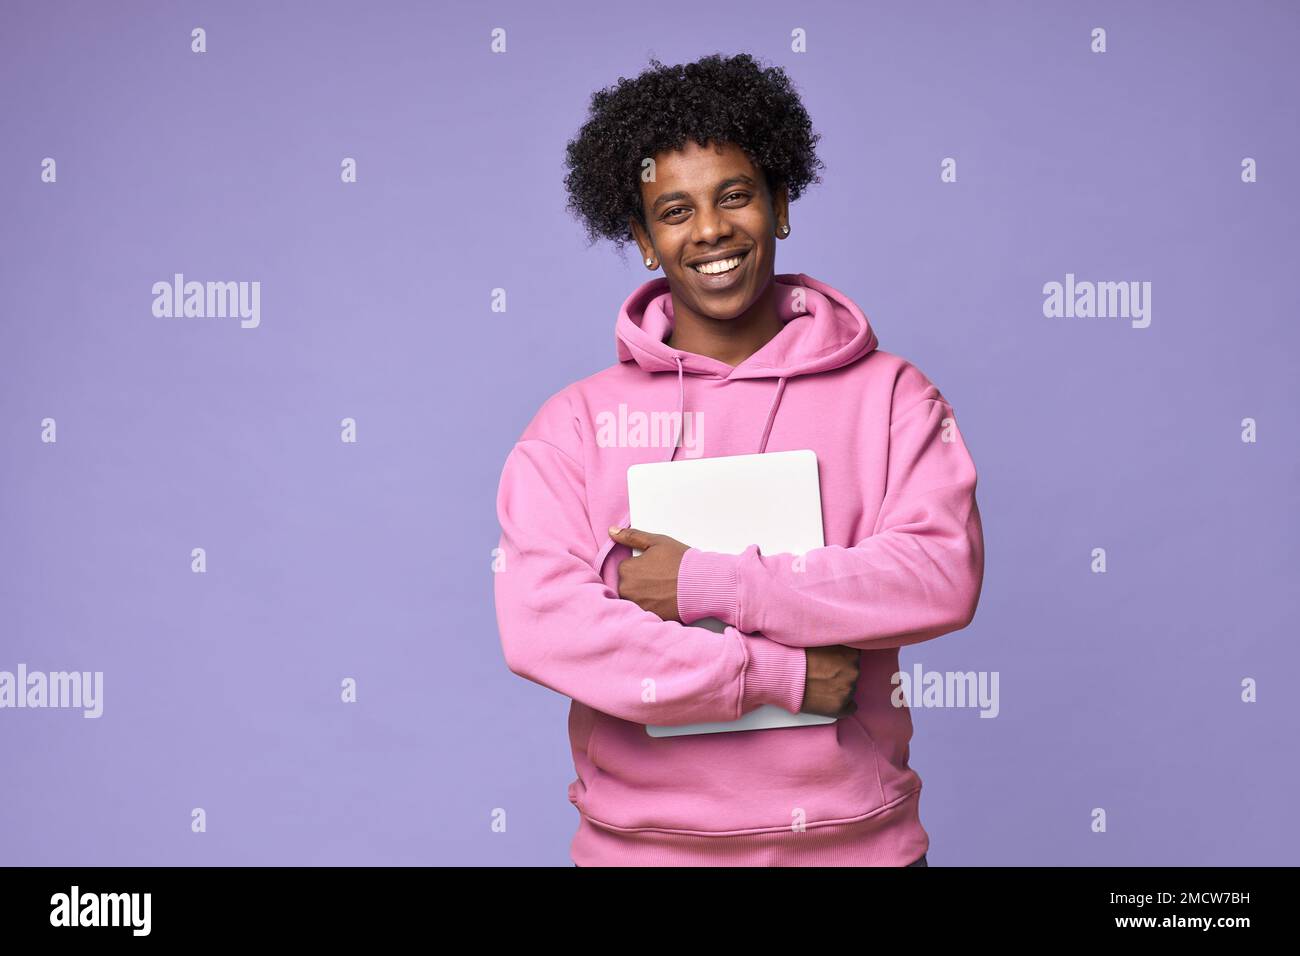 Un jeune étudiant africain heureux tenant un ordinateur portable isolé sur fond violet. Banque D'Images